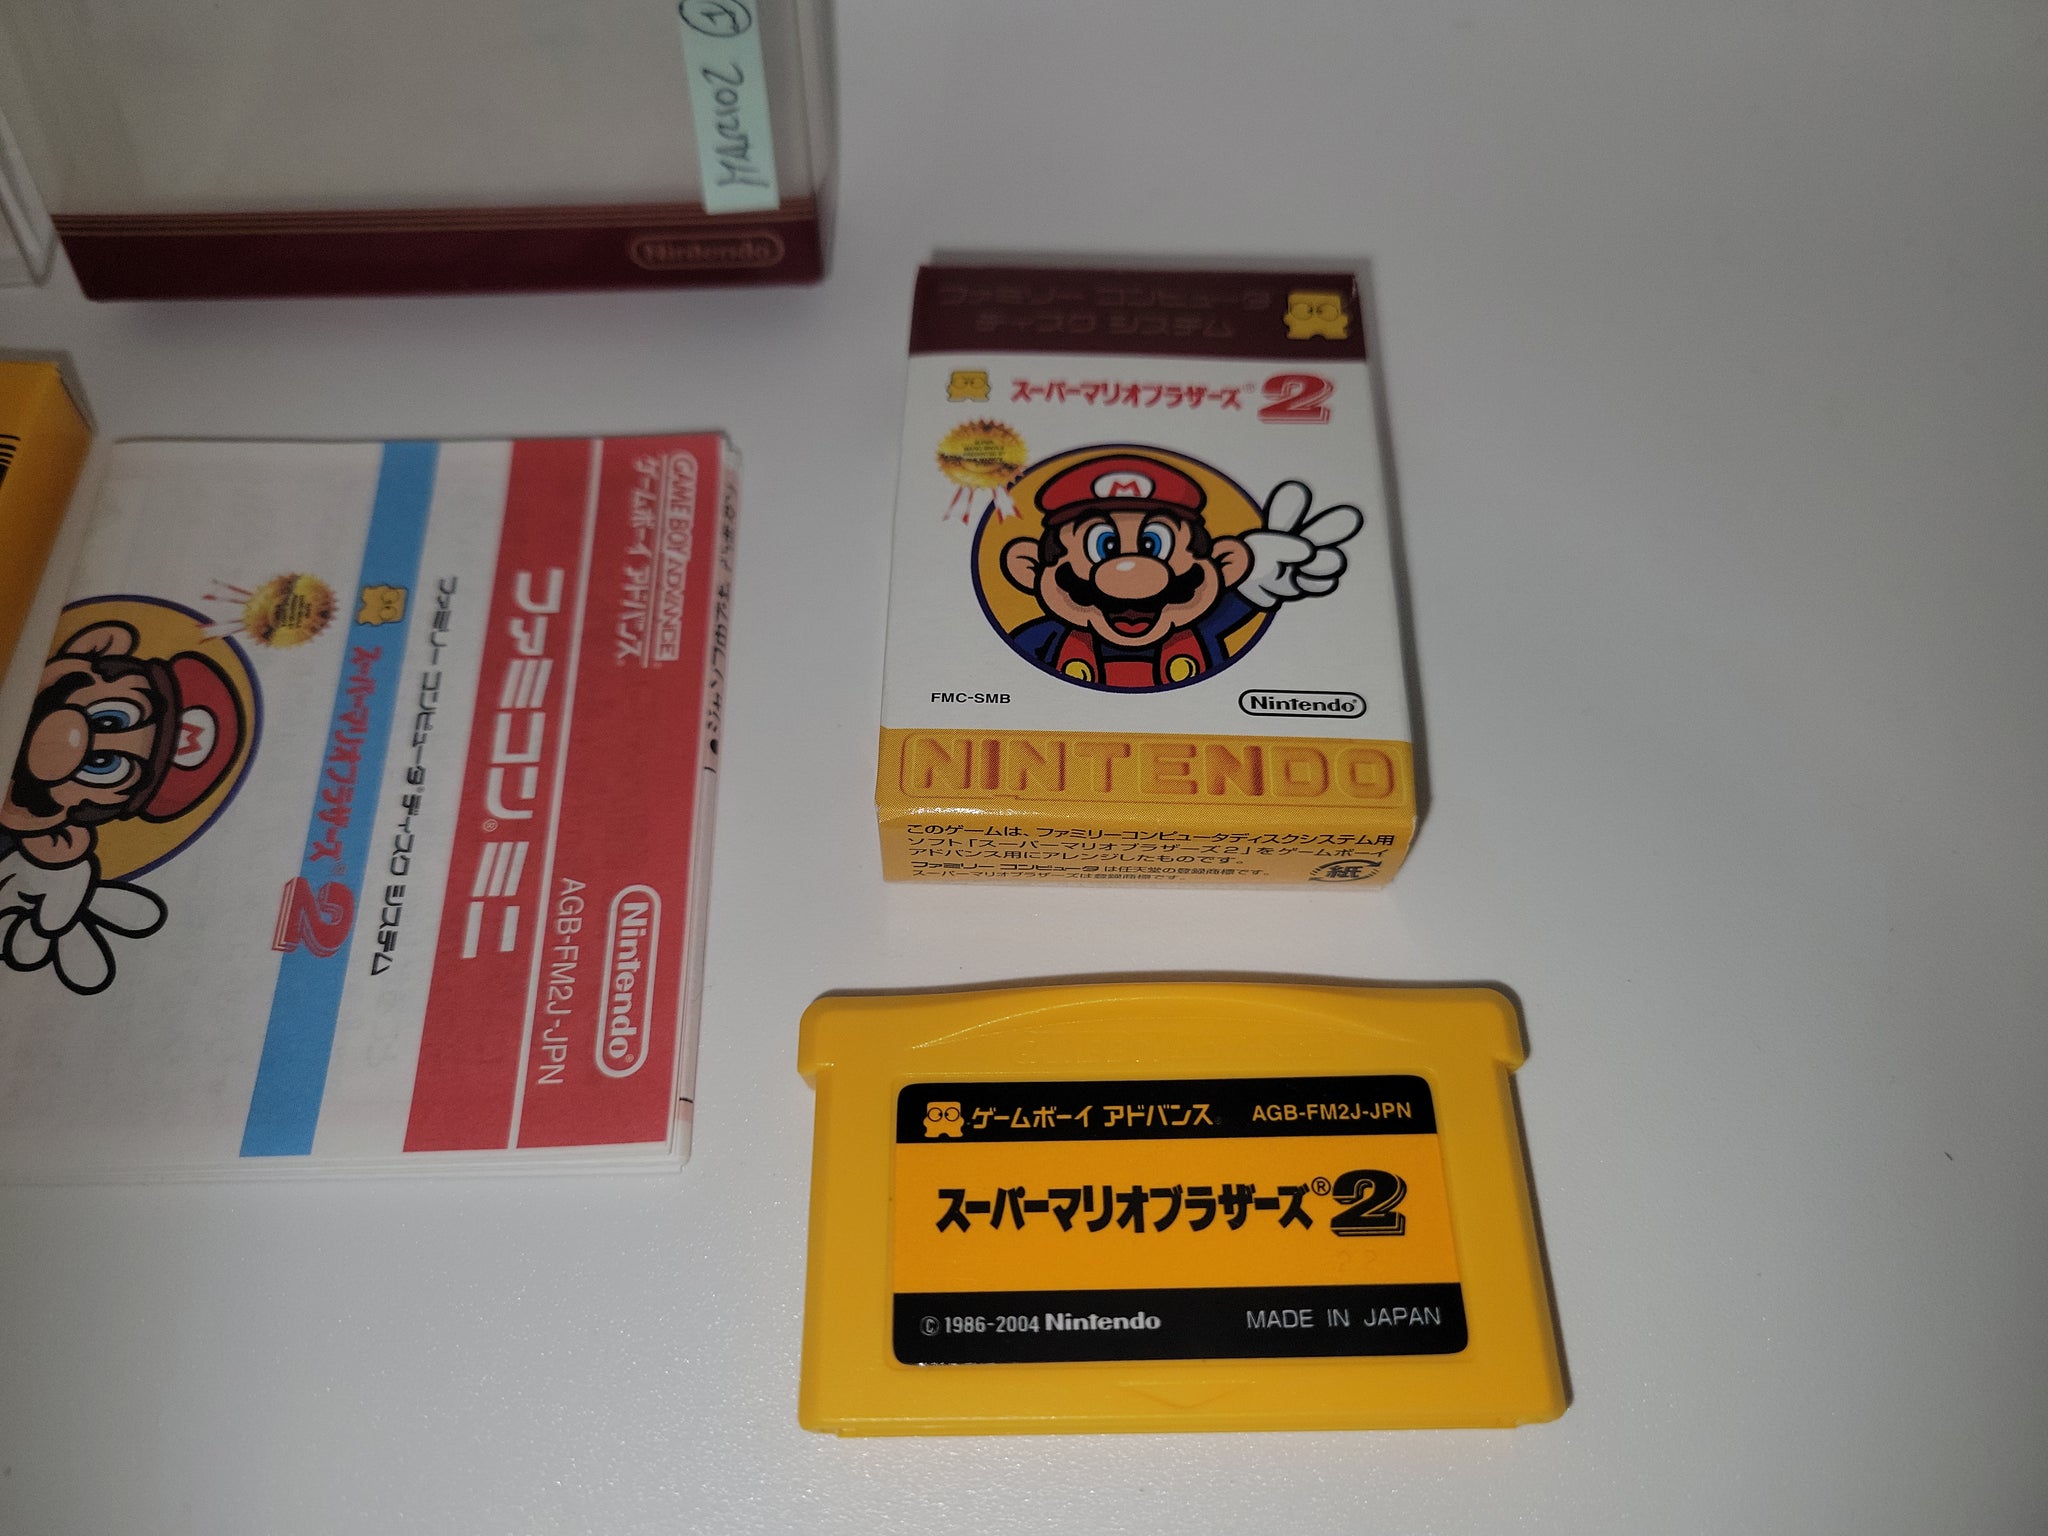 Famicom Mini: Super Mario Bros. 2 Review for Game Boy Advance: - GameFAQs